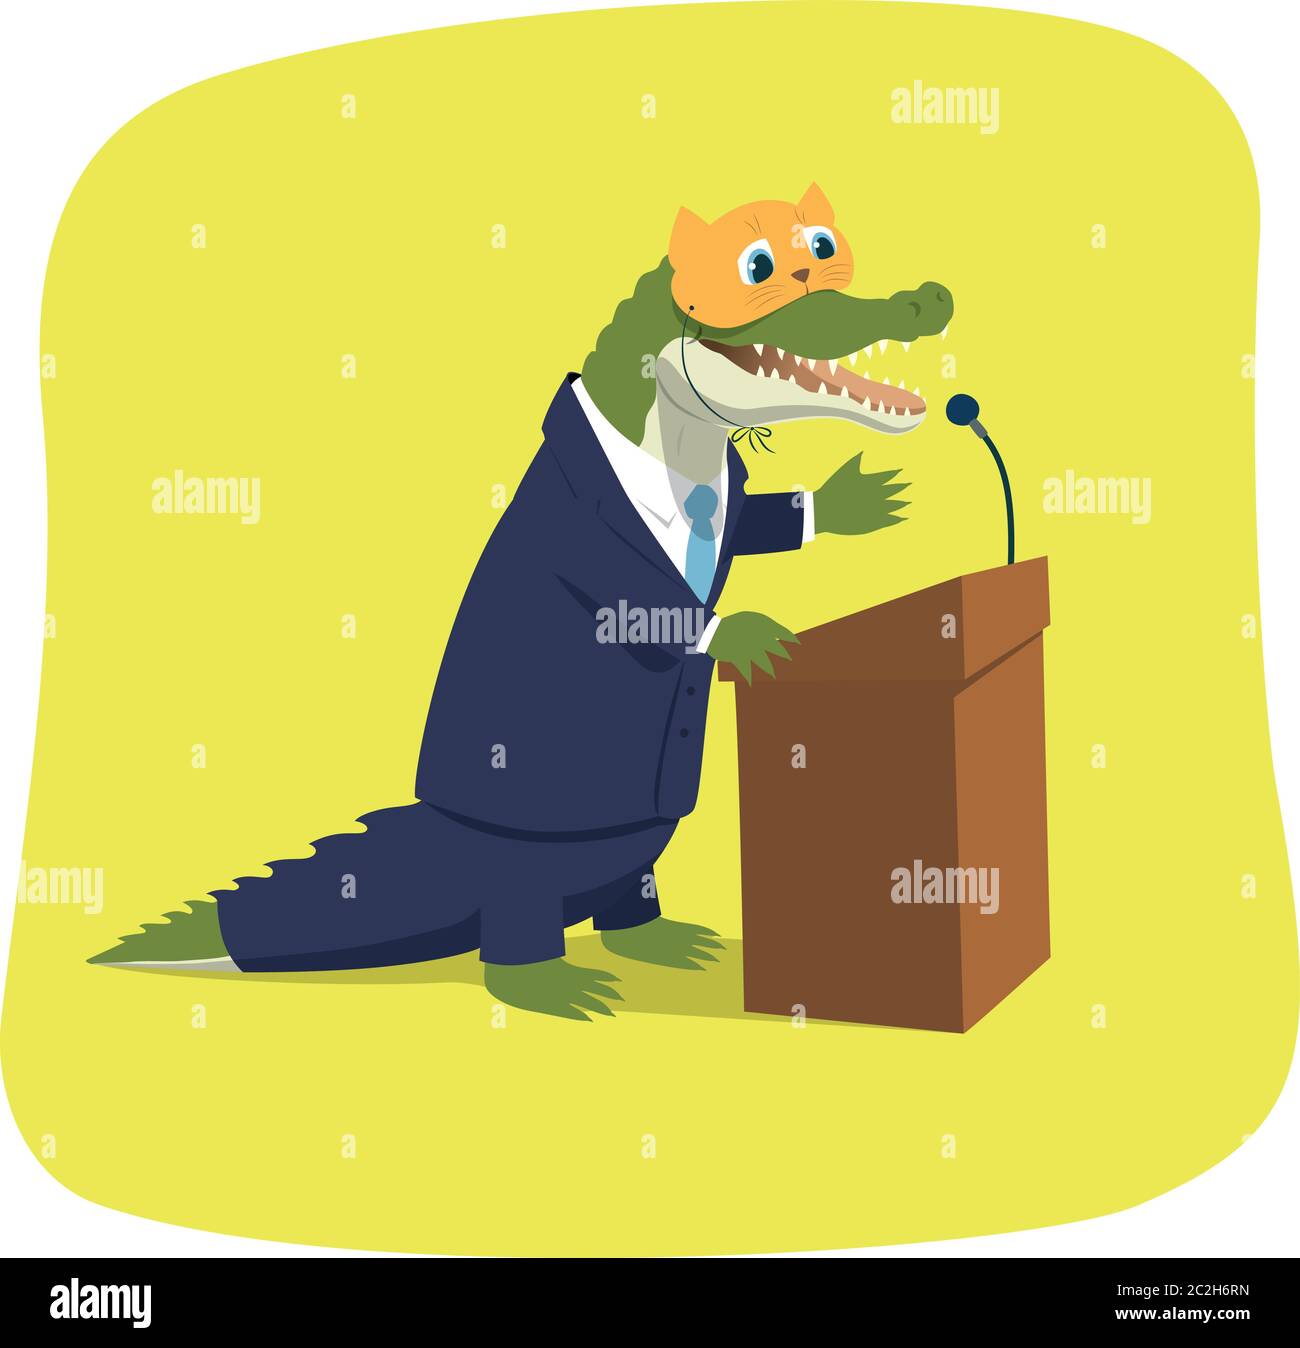 Illustrazione vettoriale di un coccodrillo che finge un gattino carino mentre si dà un discorso a una tribuna. Caricatura politica. La maschera si trova su un livello separato. Illustrazione Vettoriale